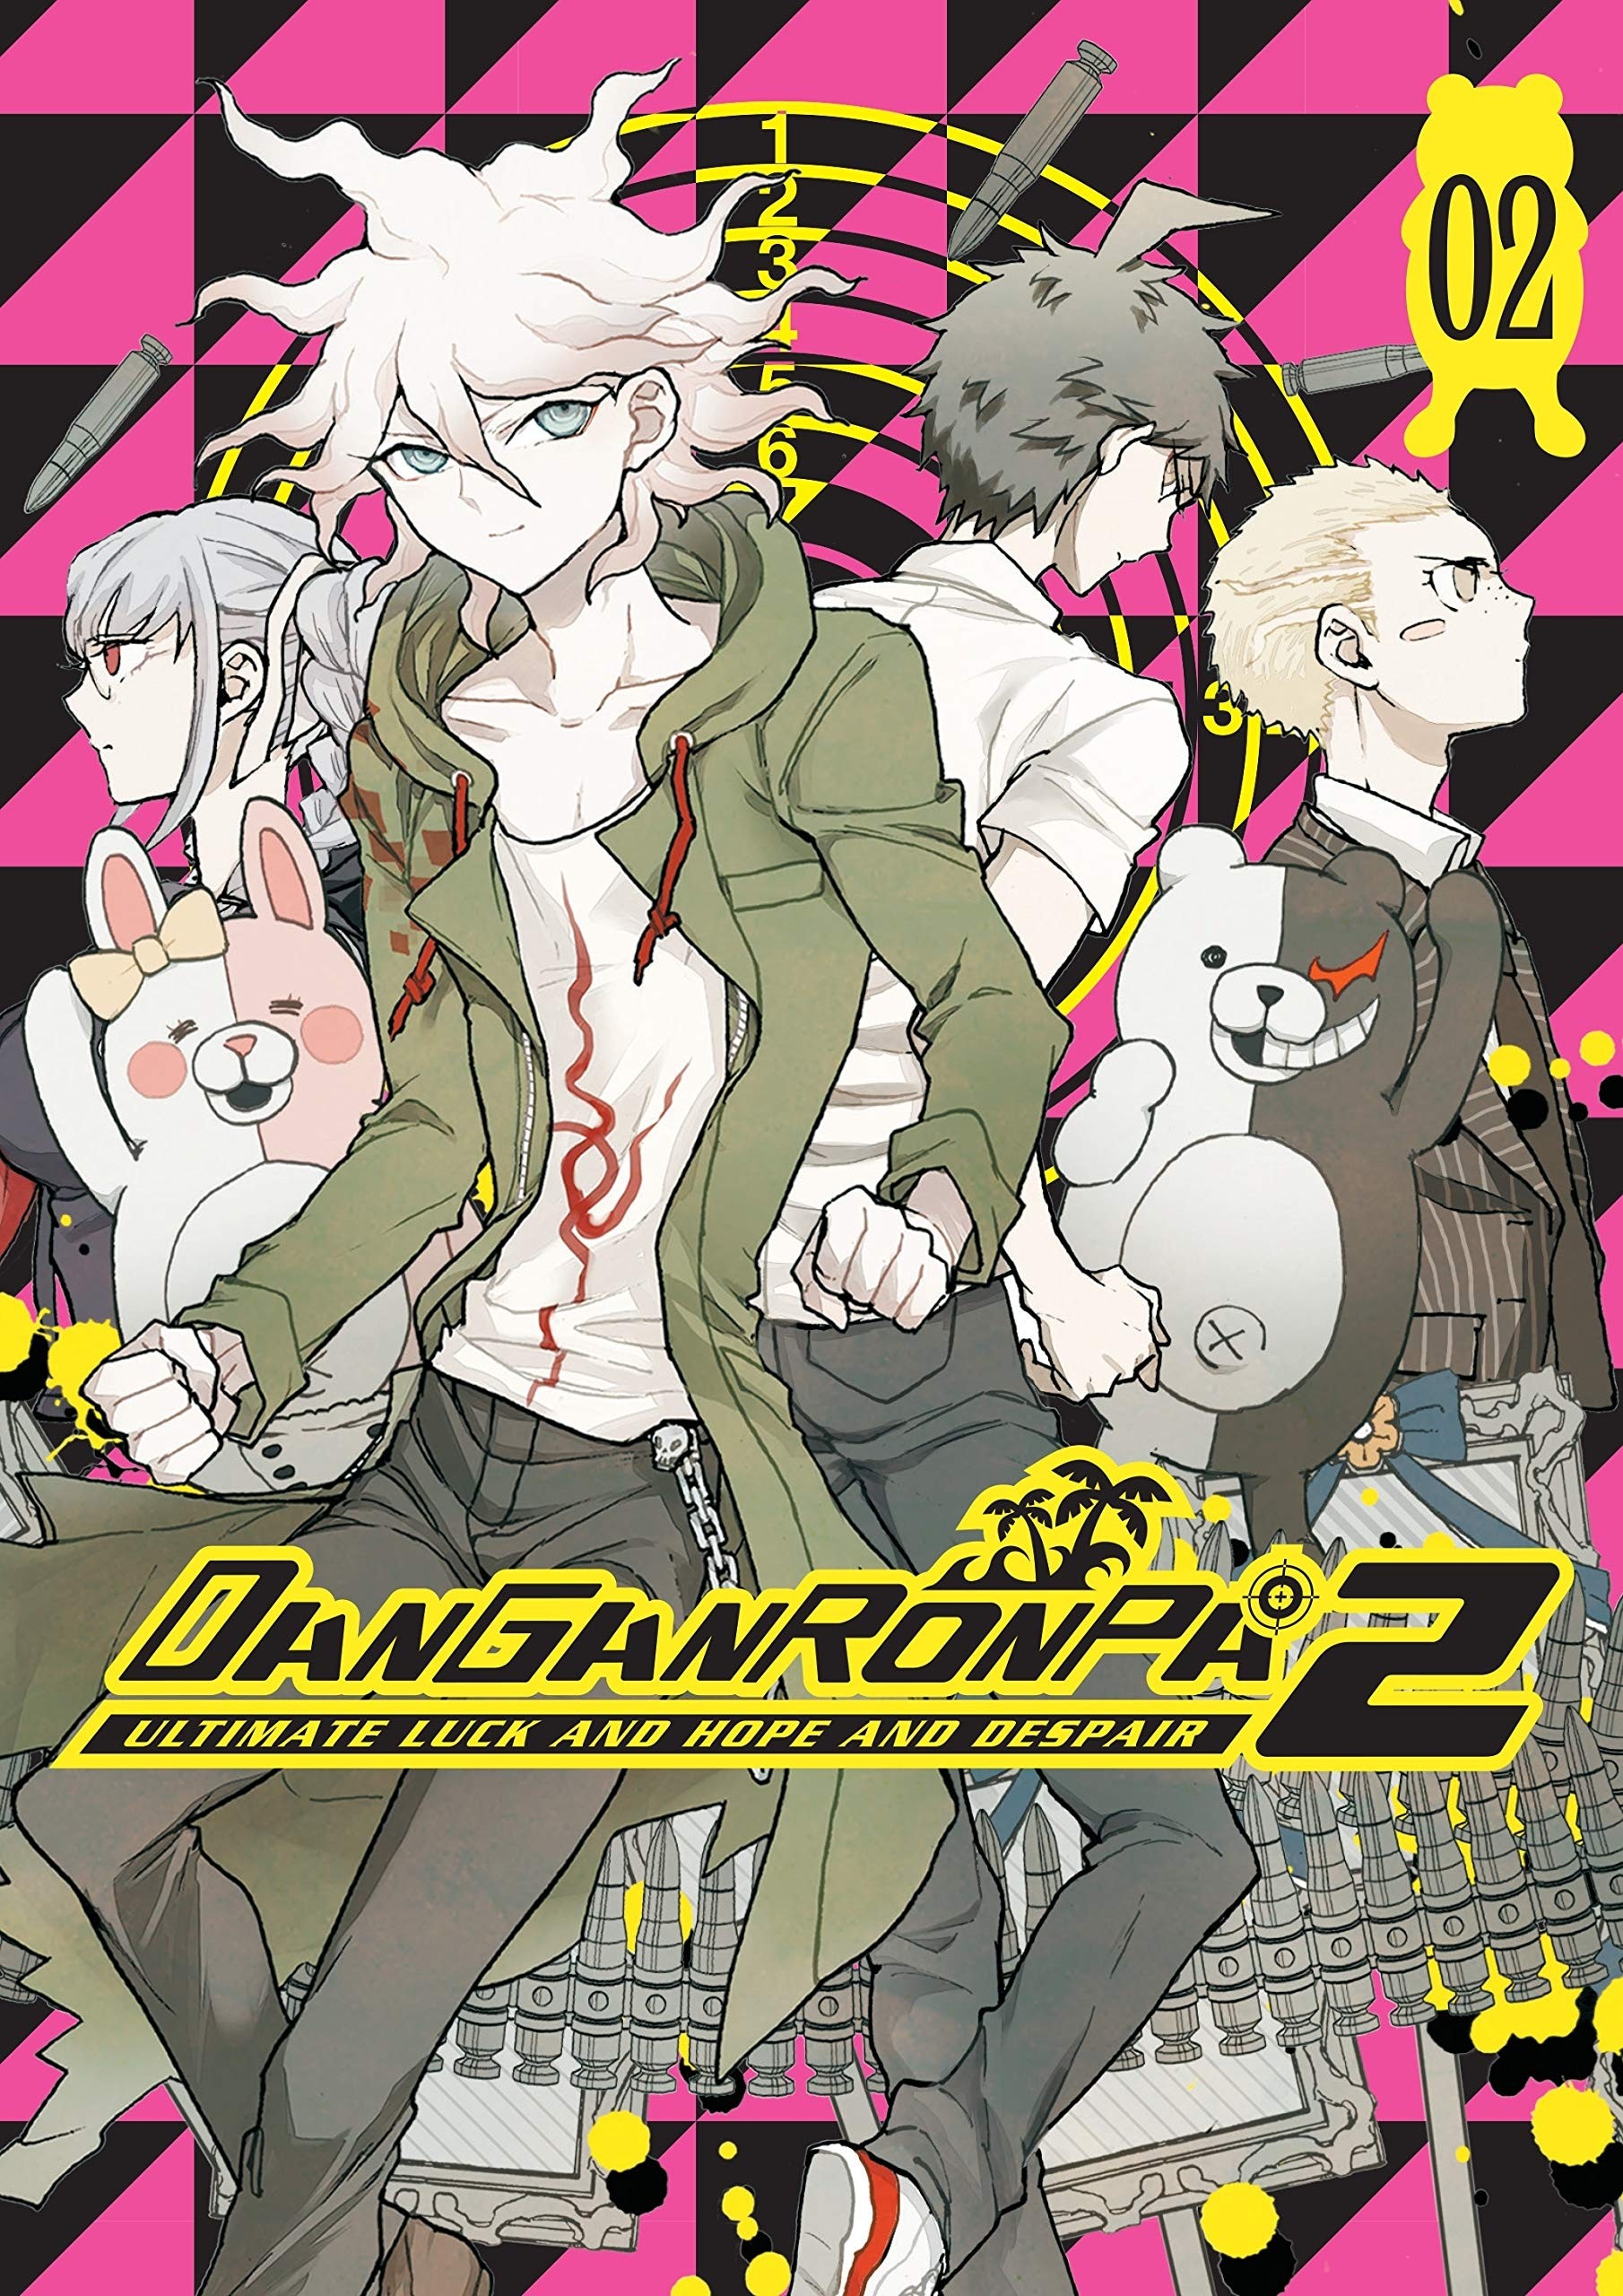 Danganronpa 2: Ultimate Luck and Hope and Despair, Vol. 02